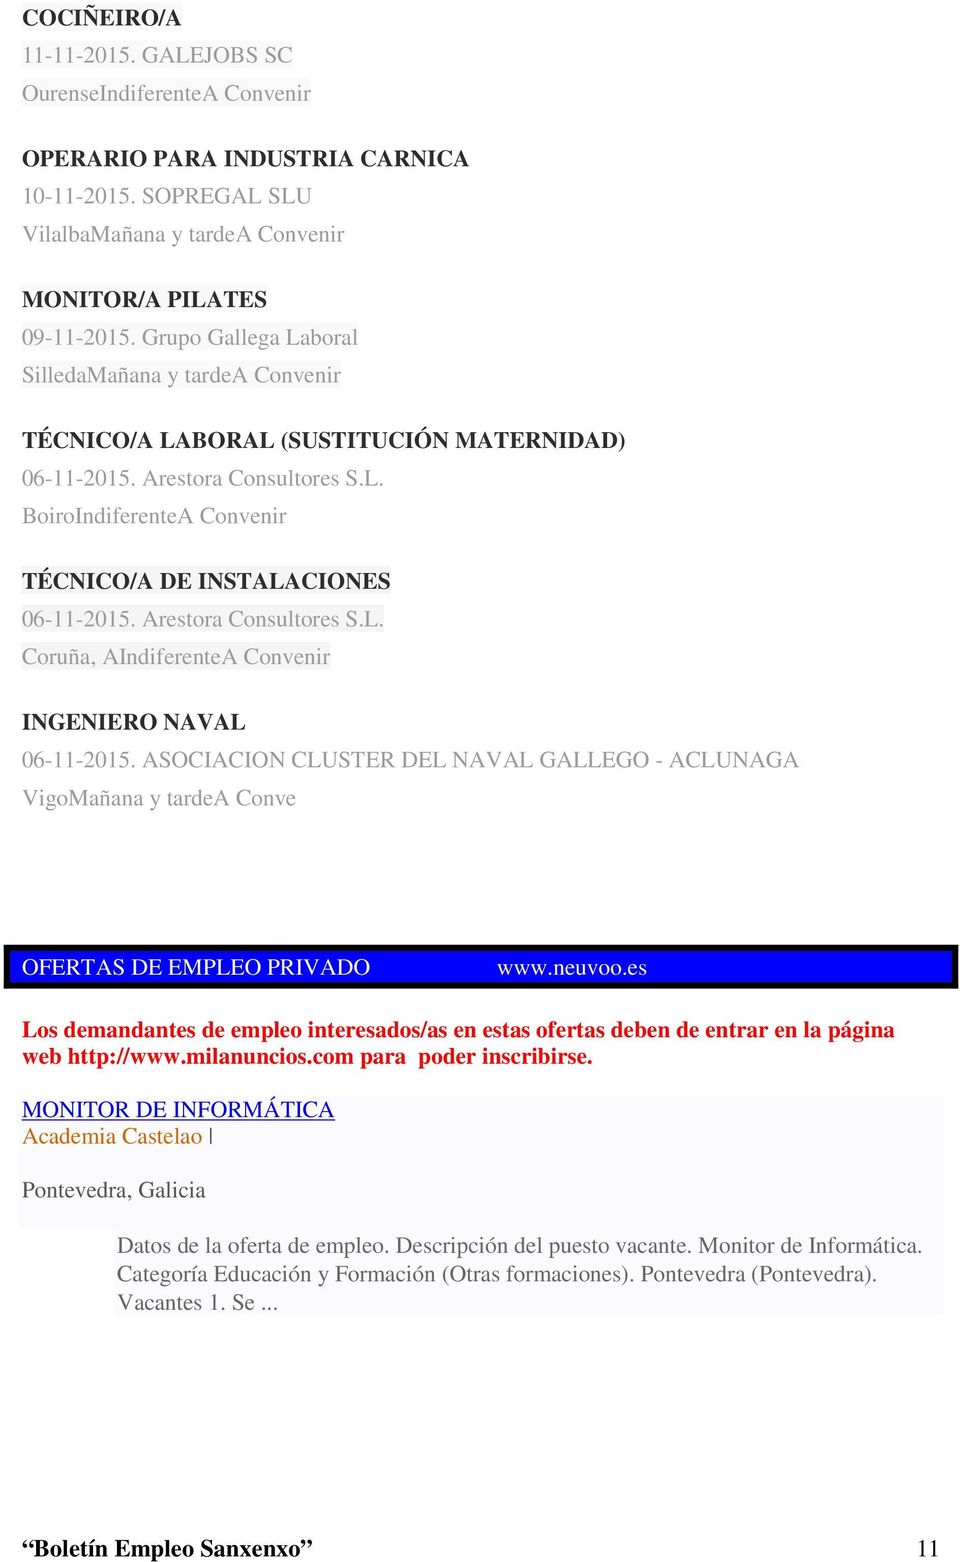 Arestora Consultores S.L. Coruña, AIndiferenteA Convenir INGENIERO NAVAL 06-11-2015. ASOCIACION CLUSTER DEL NAVAL GALLEGO - ACLUNAGA VigoMañana y tardea Conve OFERTAS DE EMPLEO PRIVADO OFER - AS www.